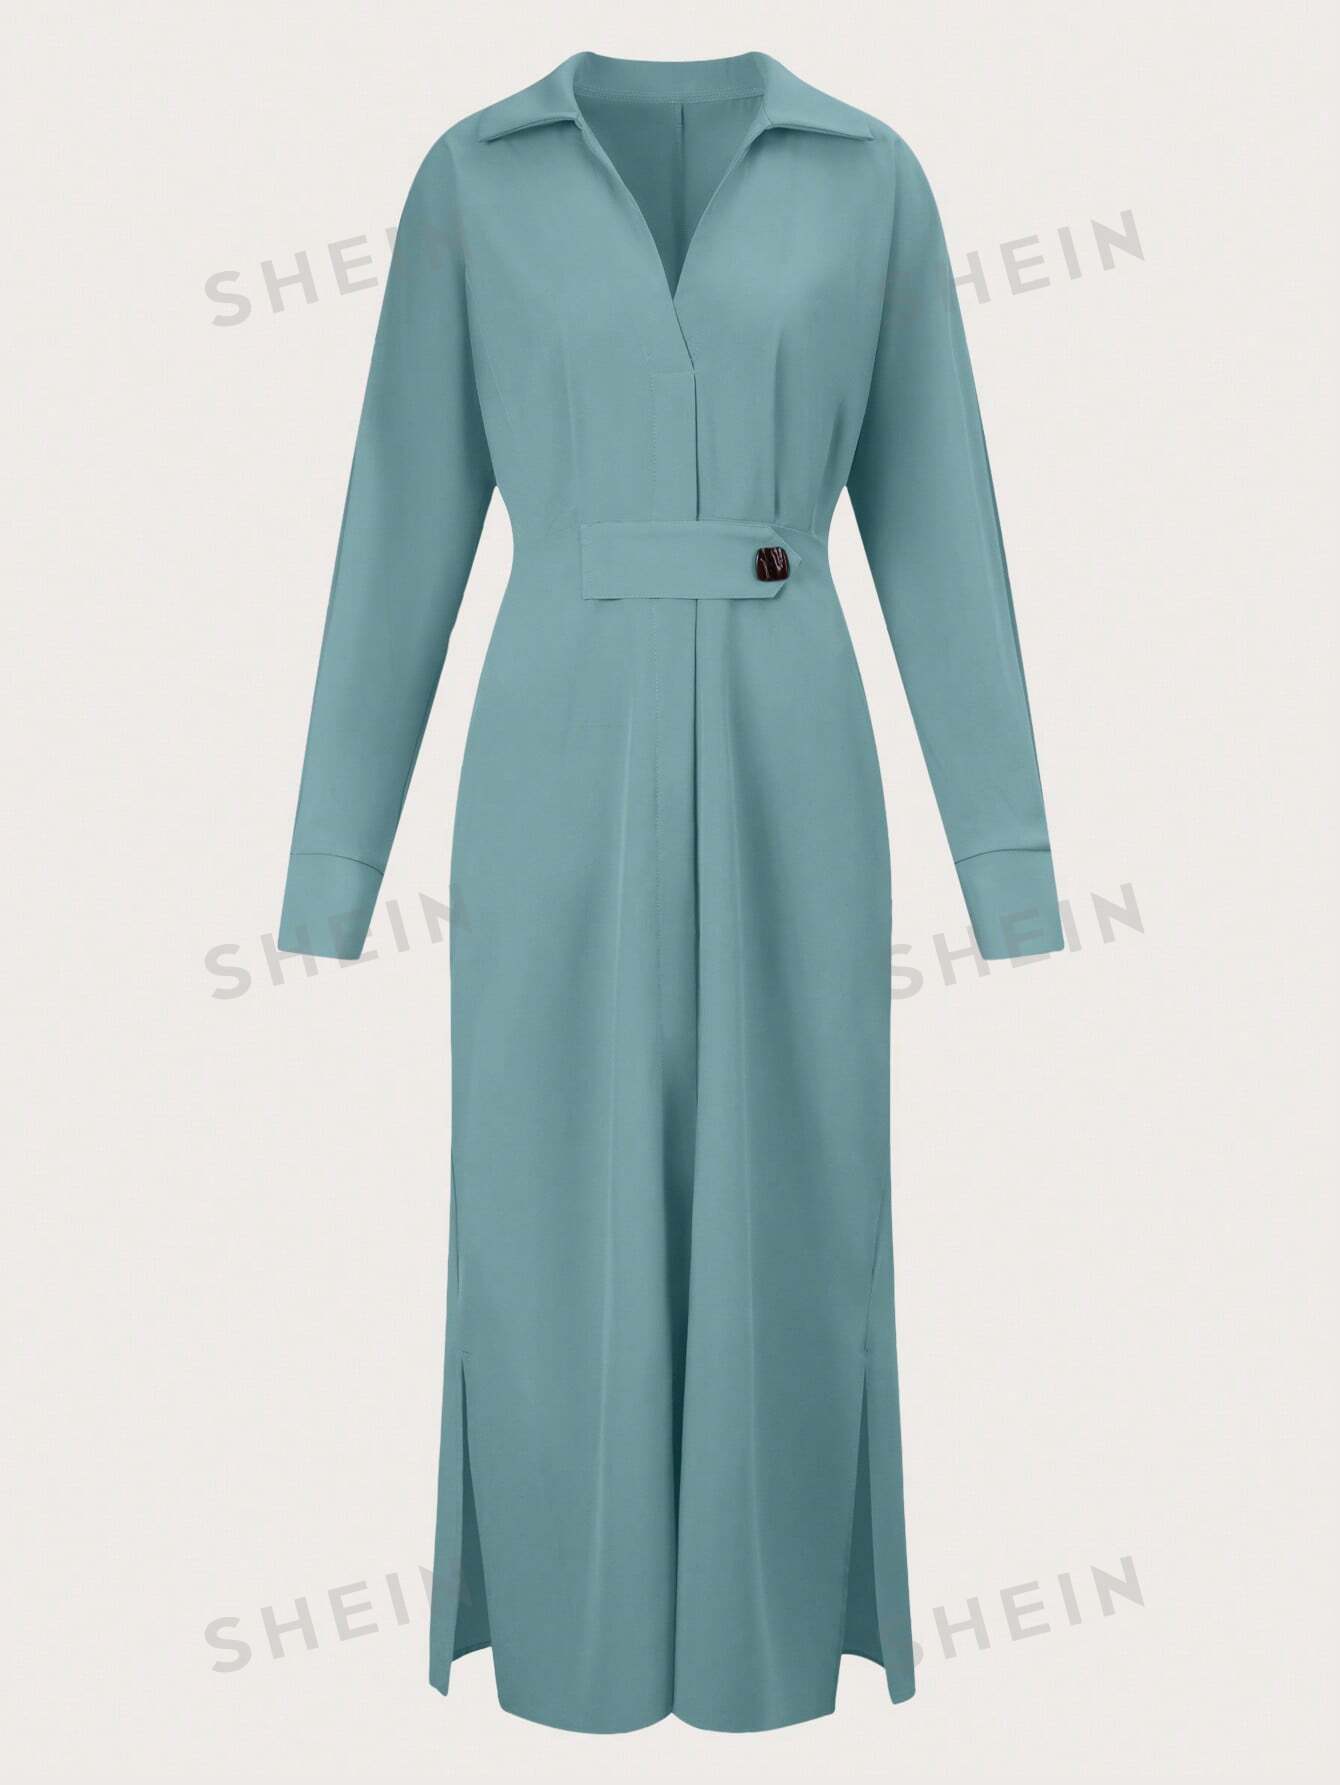 SHEIN Privé Однотонное платье макси с v-образным вырезом, зеленый shein bae женская блестящая майка с глубоким v образным вырезом черный